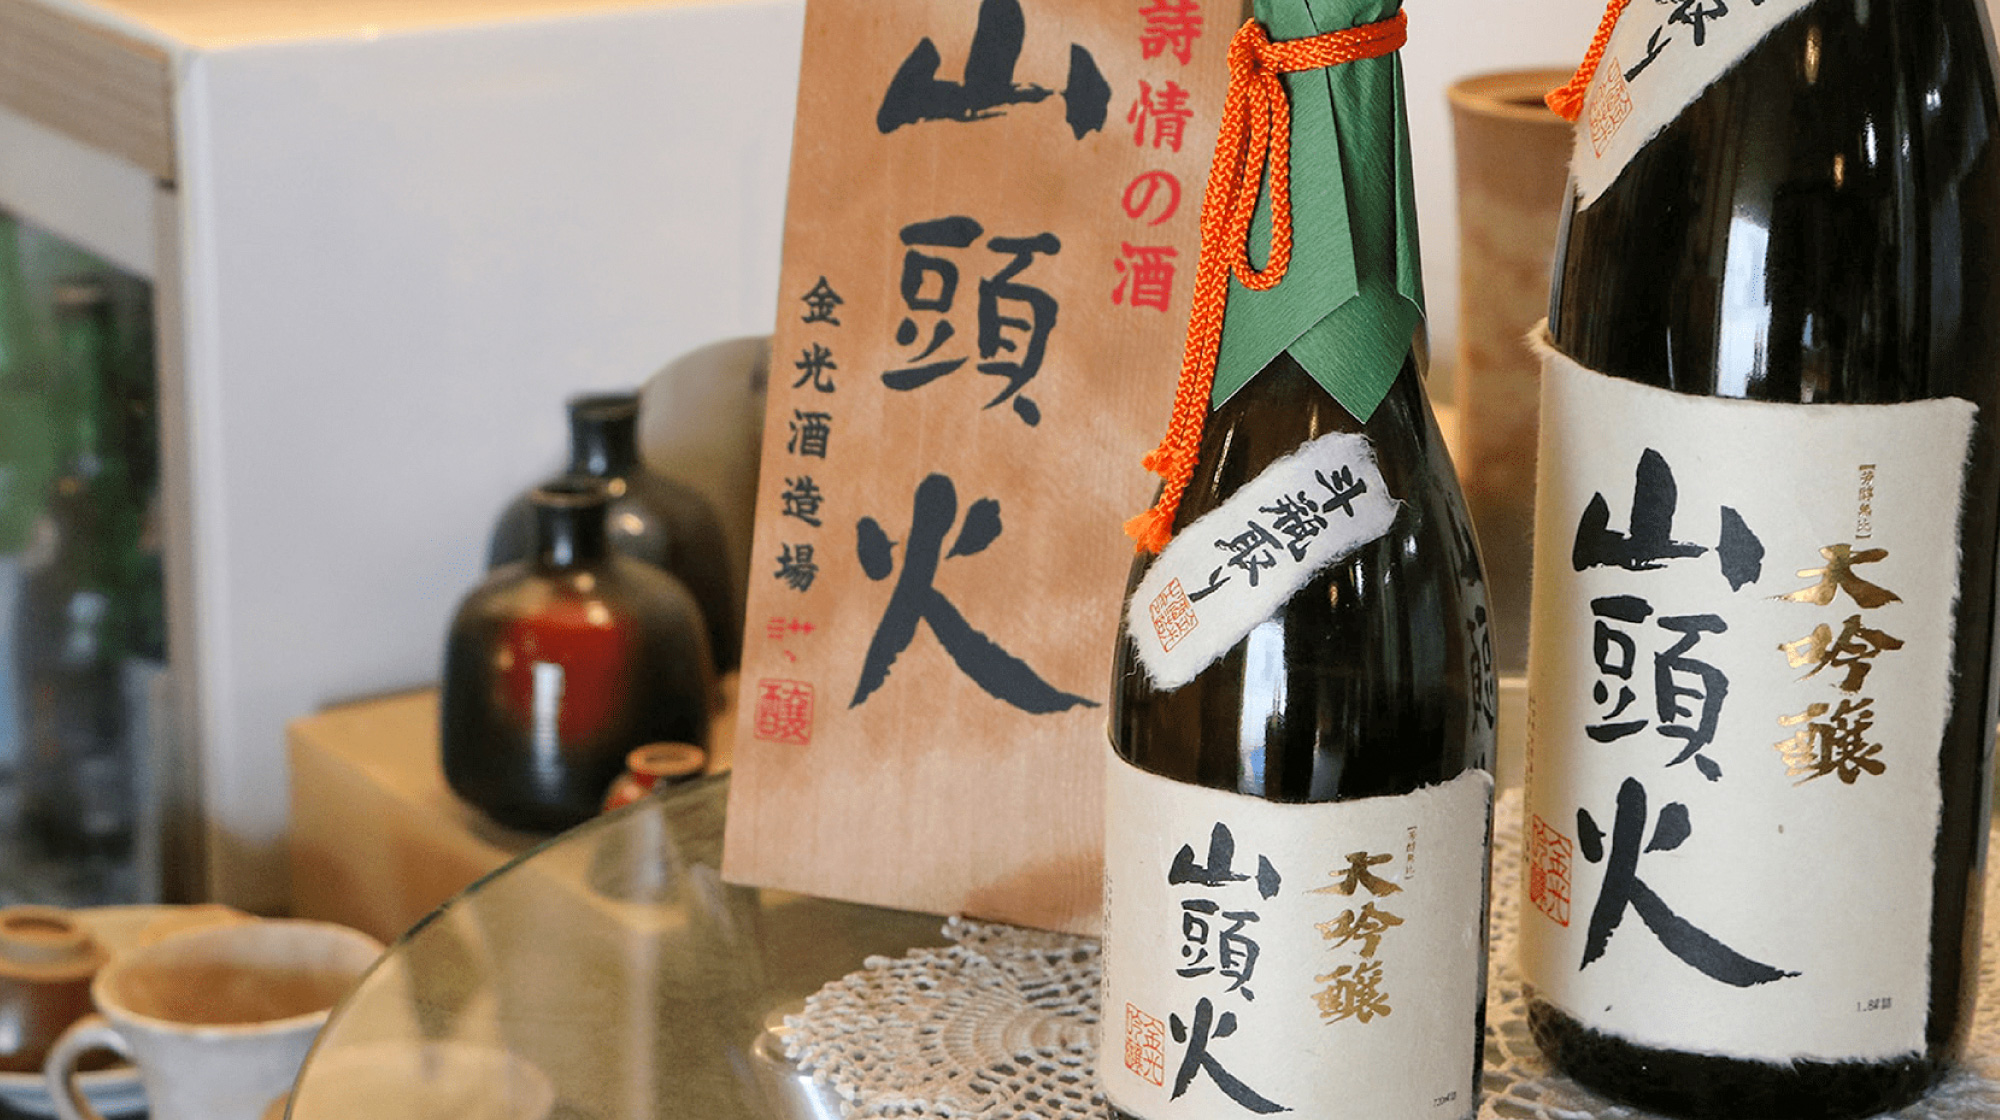 Tours of Kanemitsu Sake Brewery